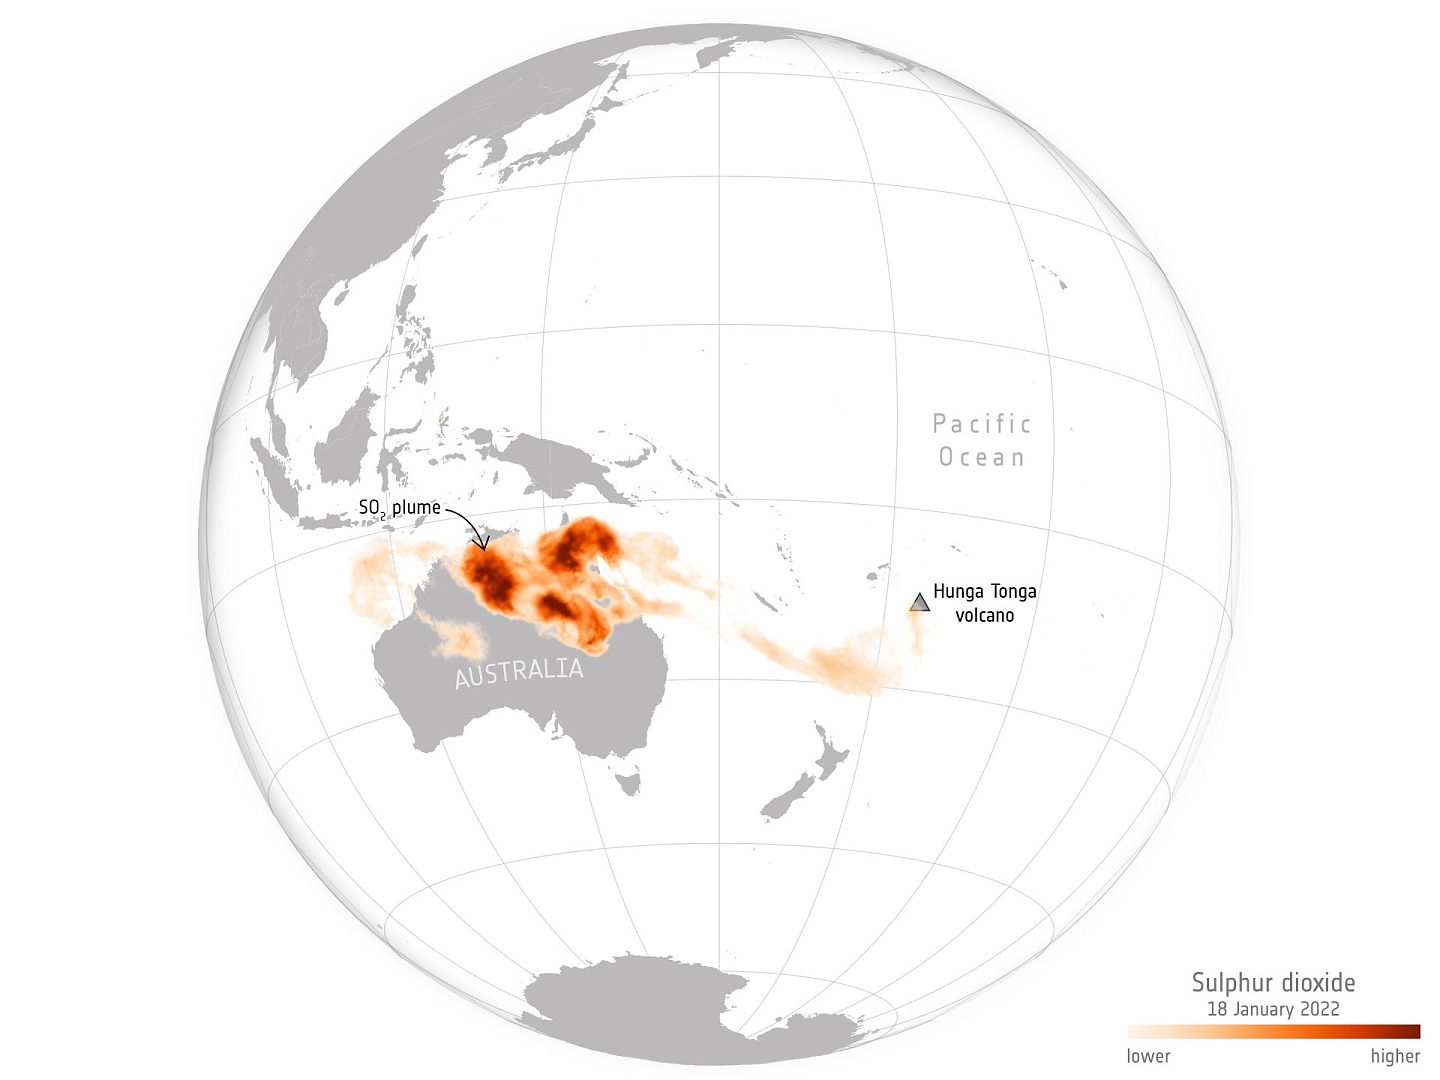 汤加火山爆发产生的二氧化硫扩散到了澳大利亚上空 - 1